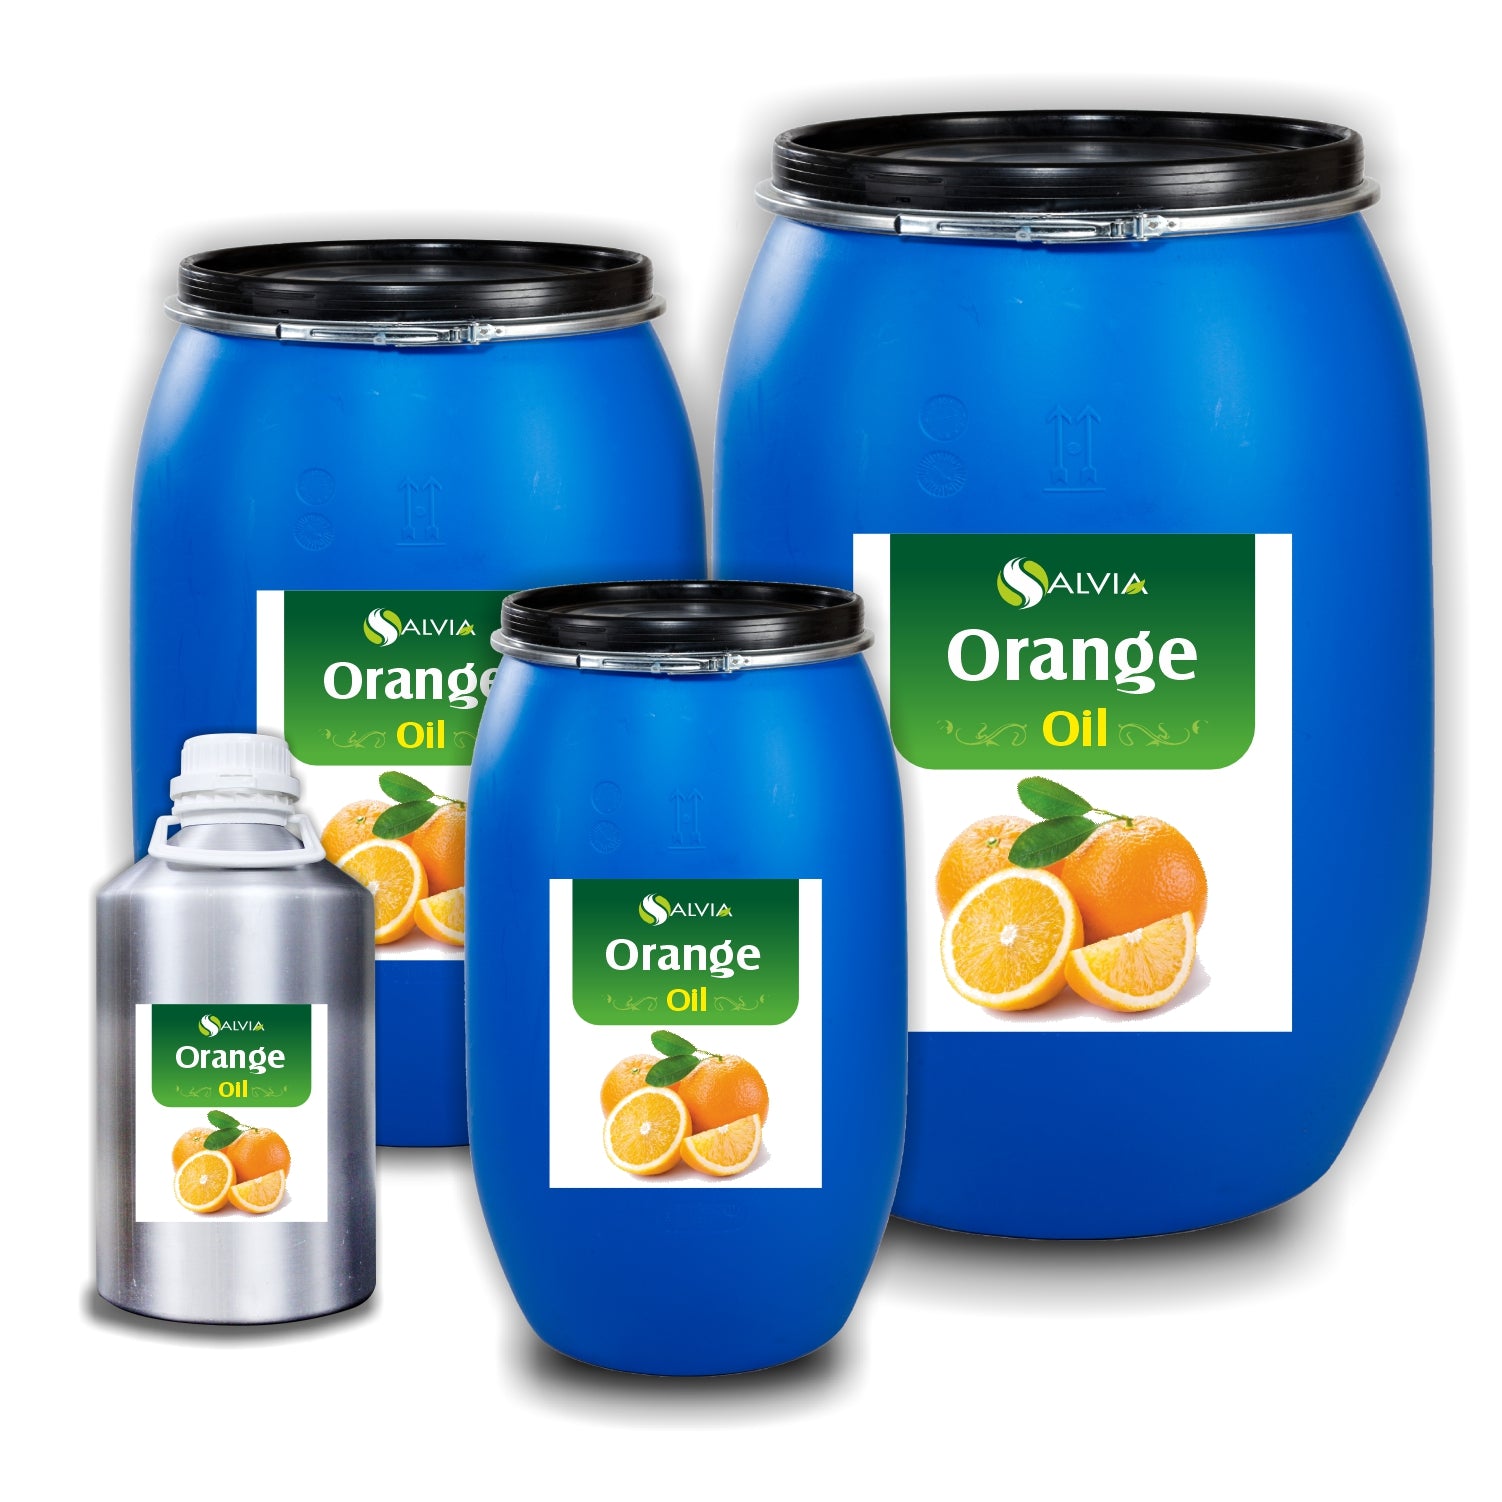 Salvia Natural Essential Oils 10kg Orange Oil (Citrus sinensis) 100% Natural Pure Essential Oil